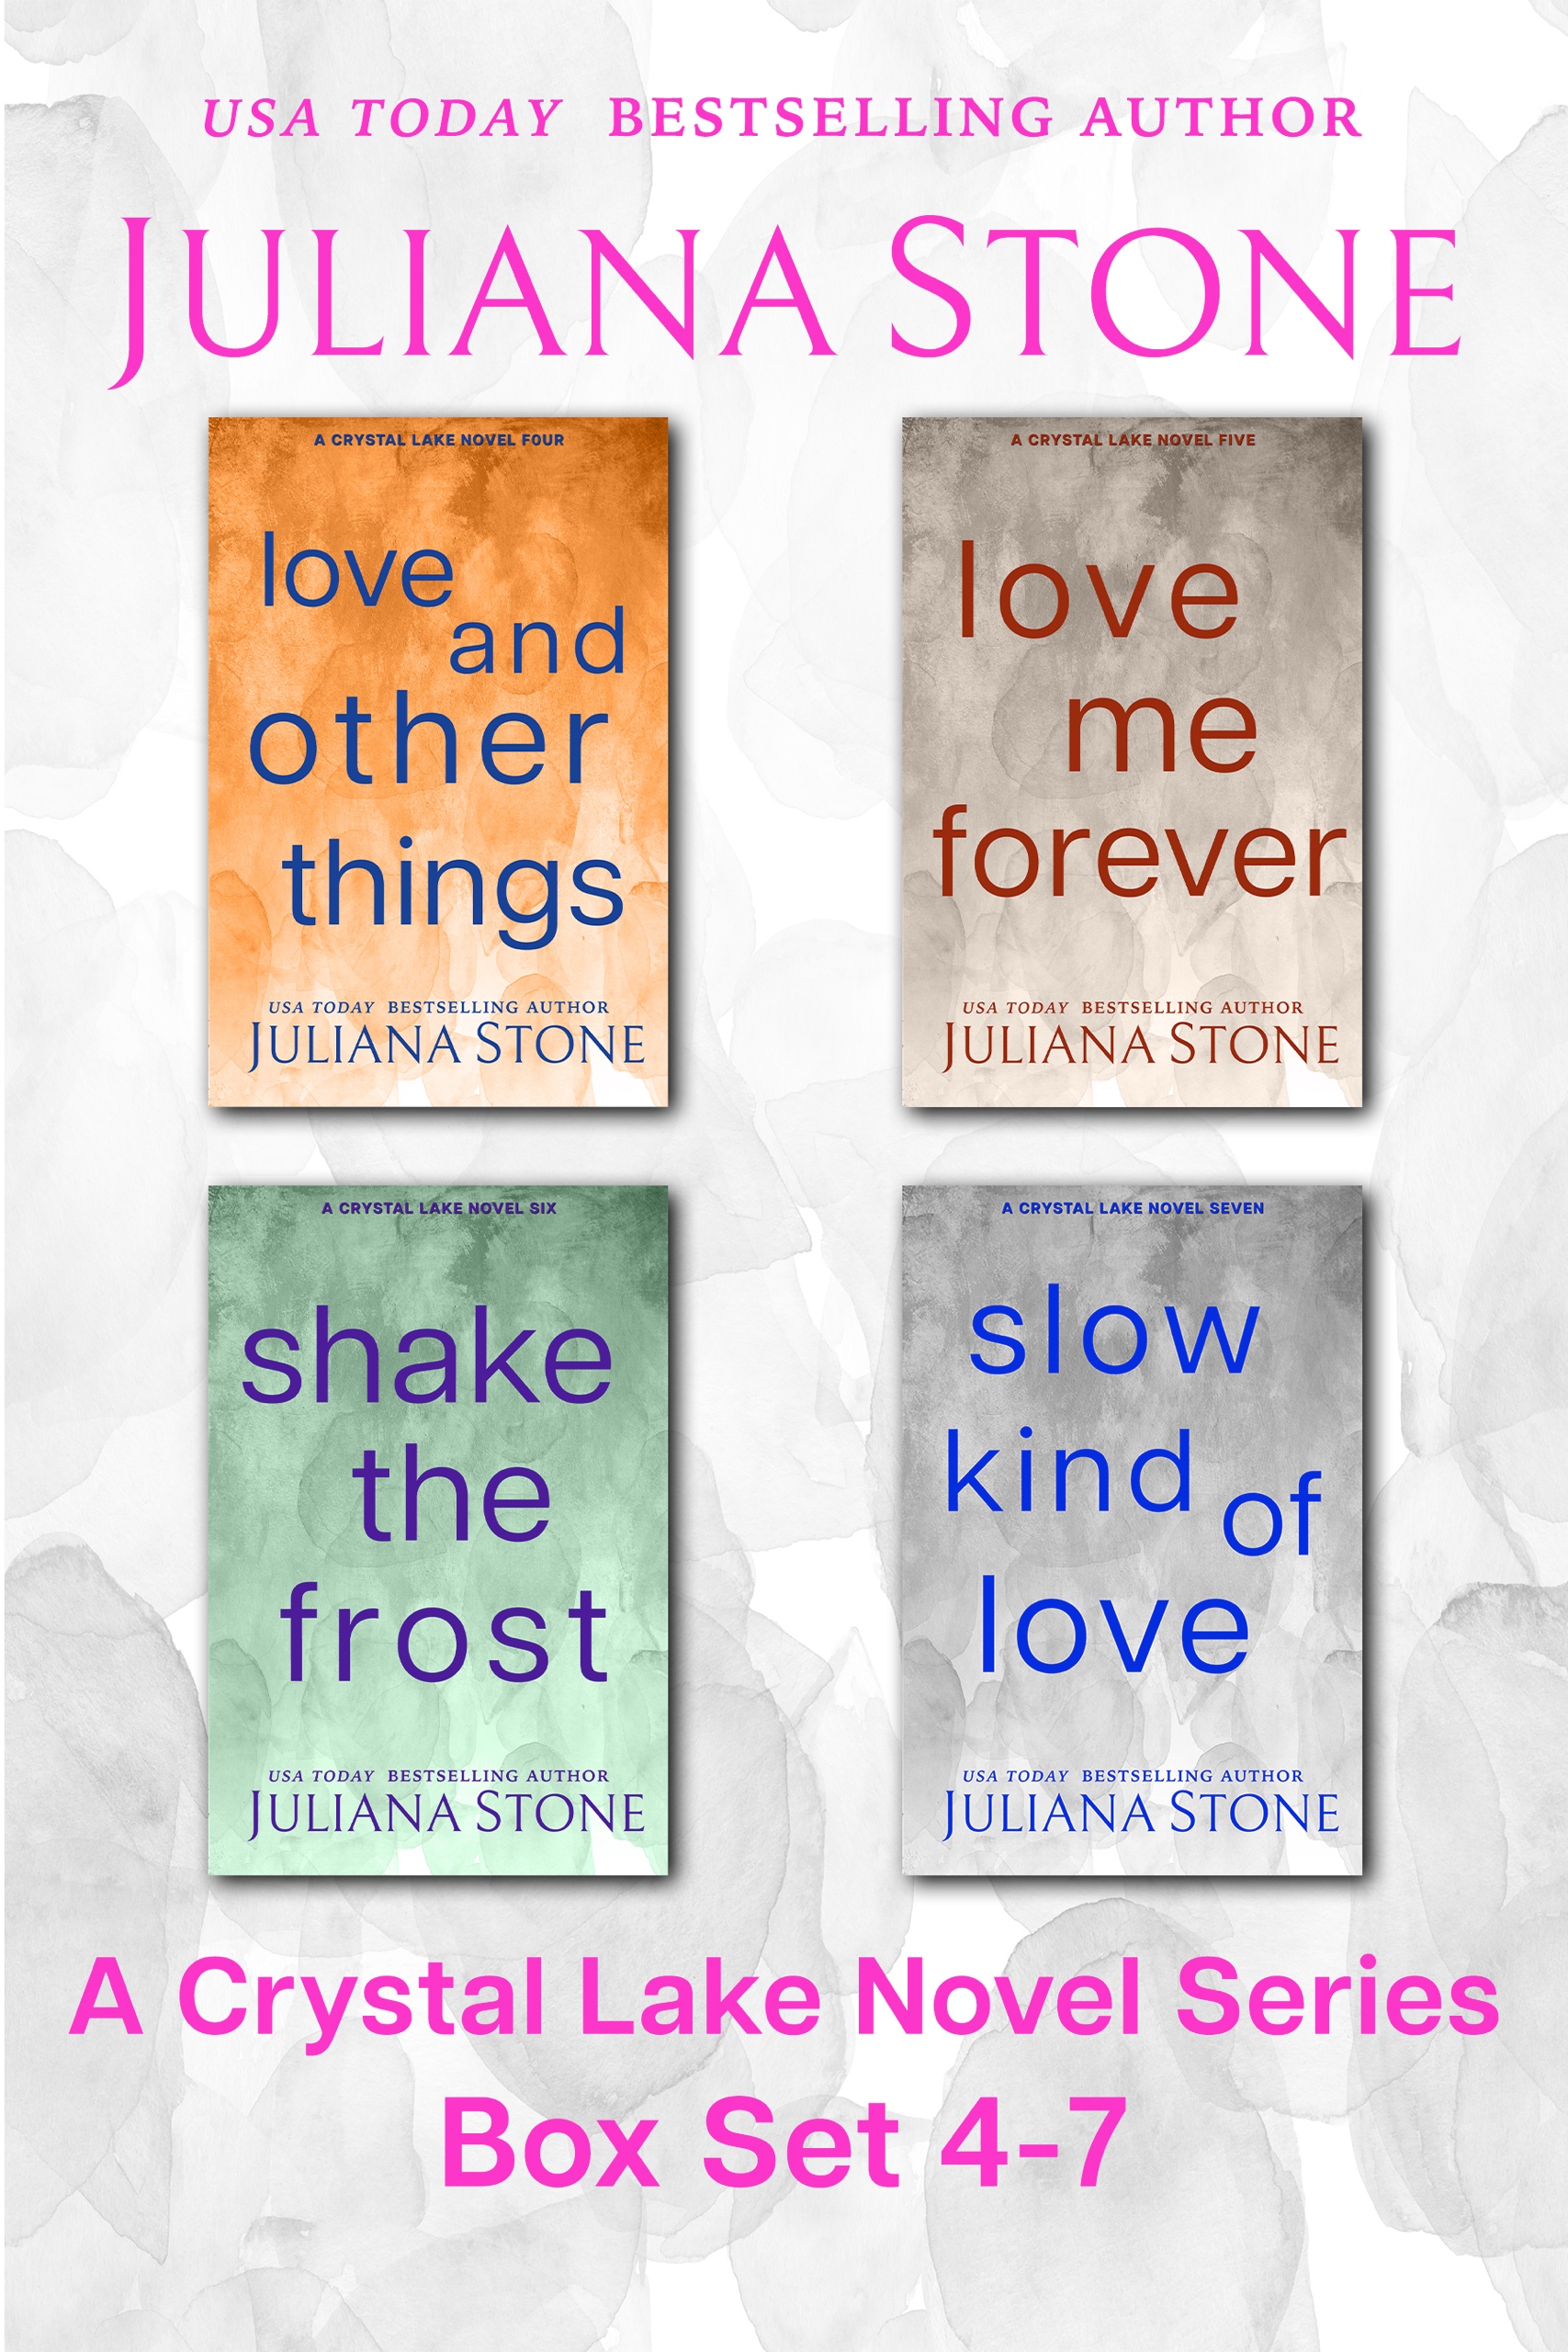 A Crystal Lake Novel Boxed Set 4-7 by Juliana Stone